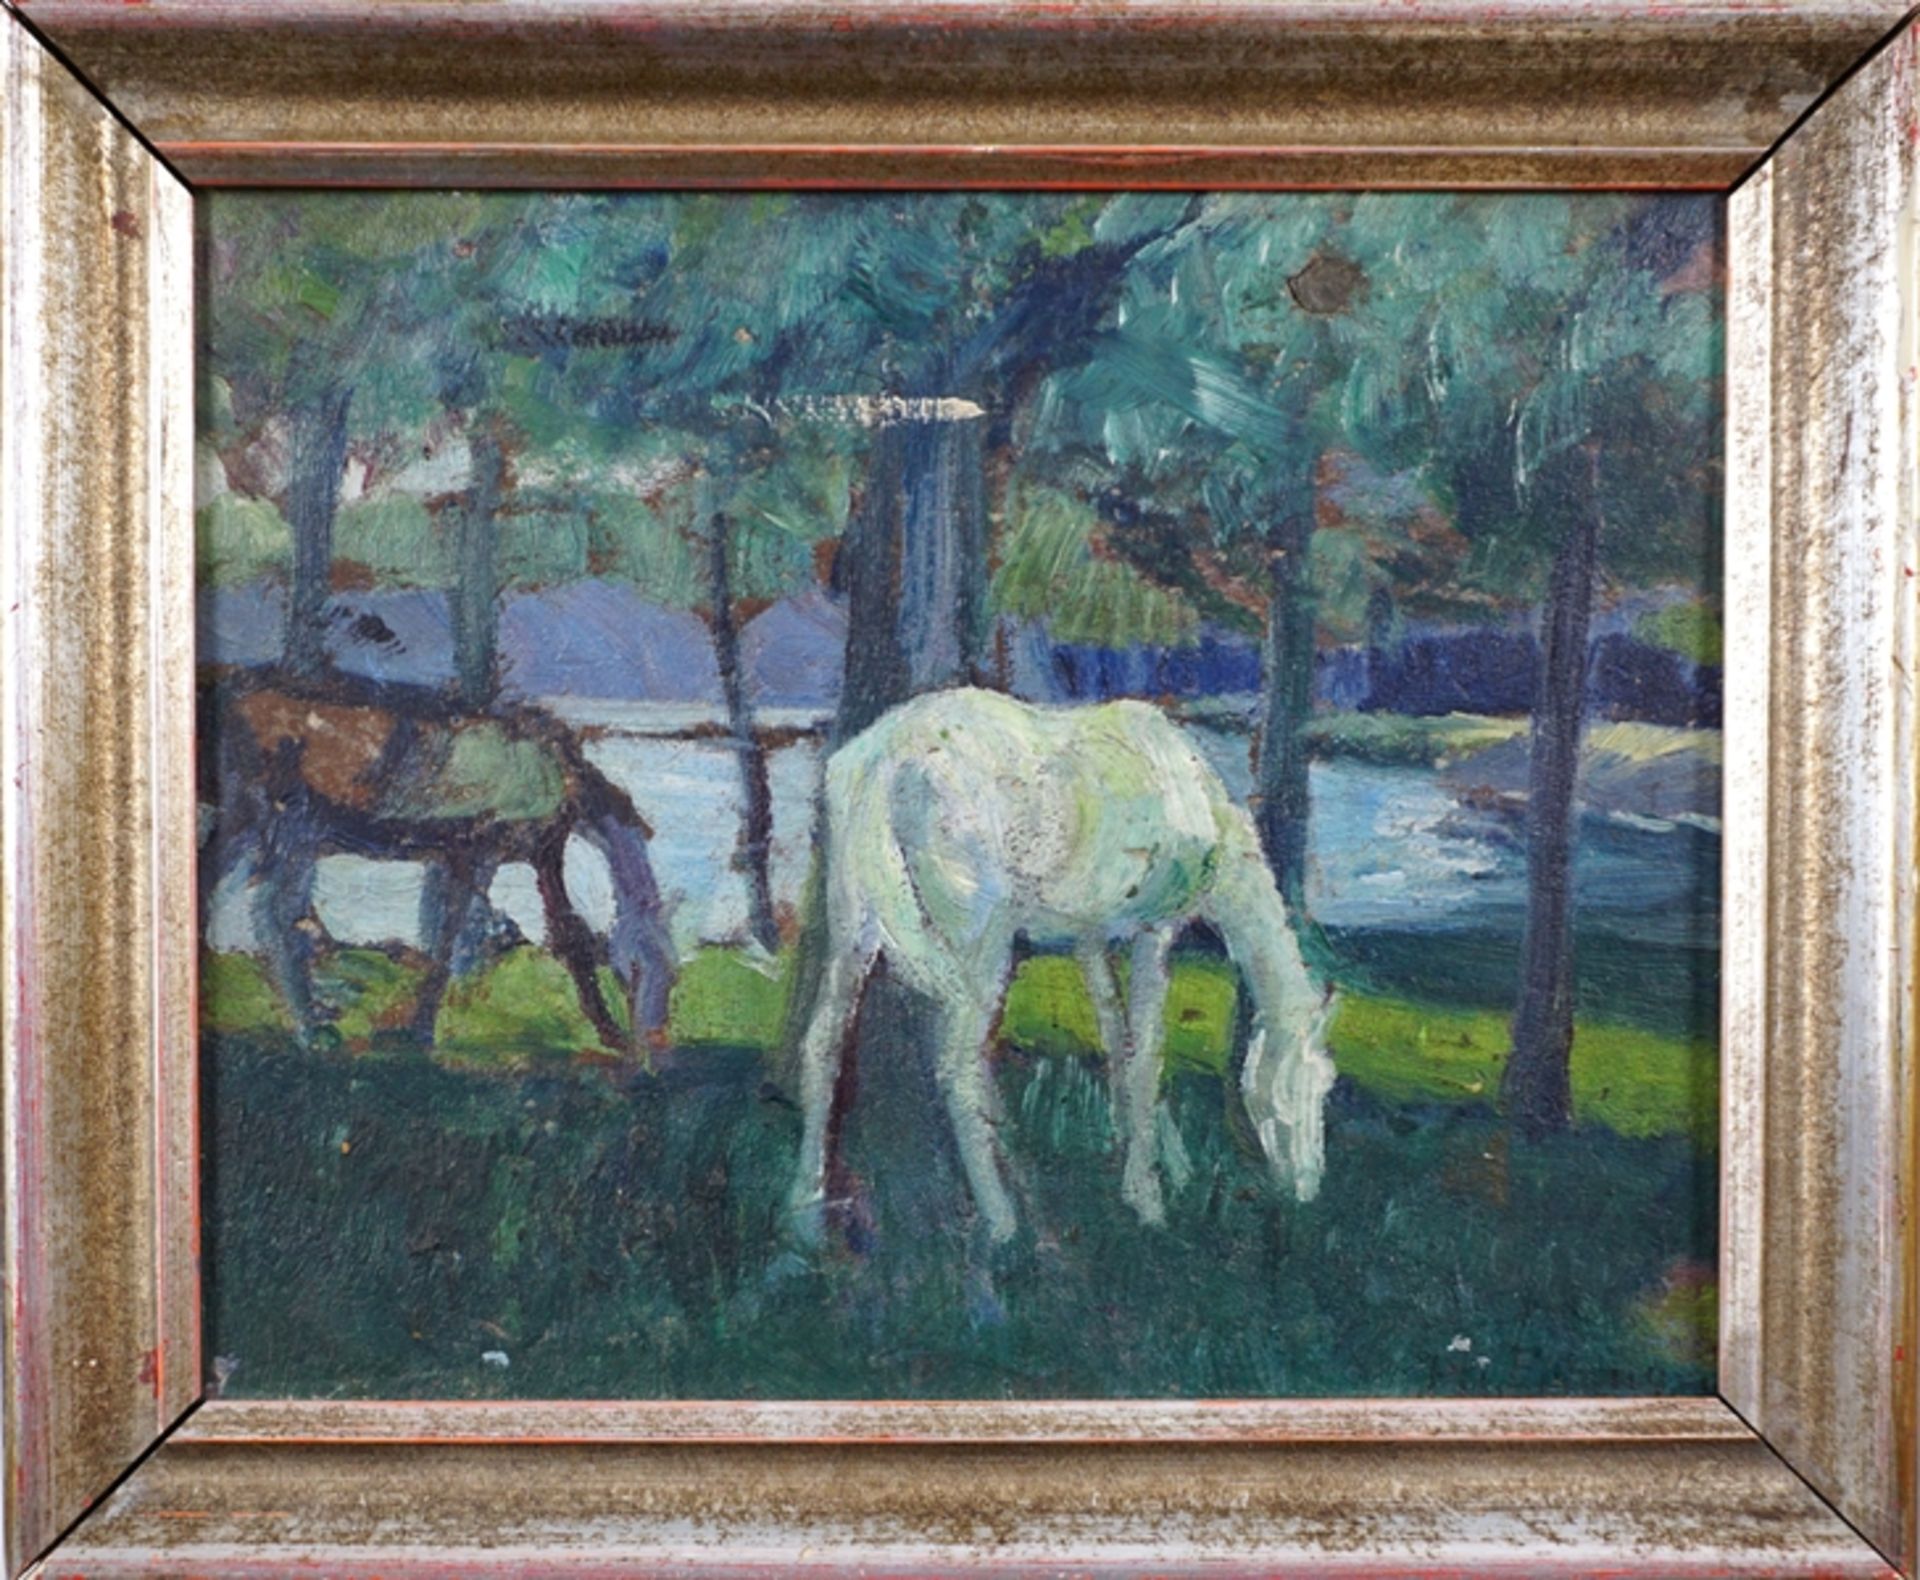 Philipp Jakob Erlanger (1870, Frankfurt/M. - 1934, Braunschweig), "Pferde", Öl/Hartfaser